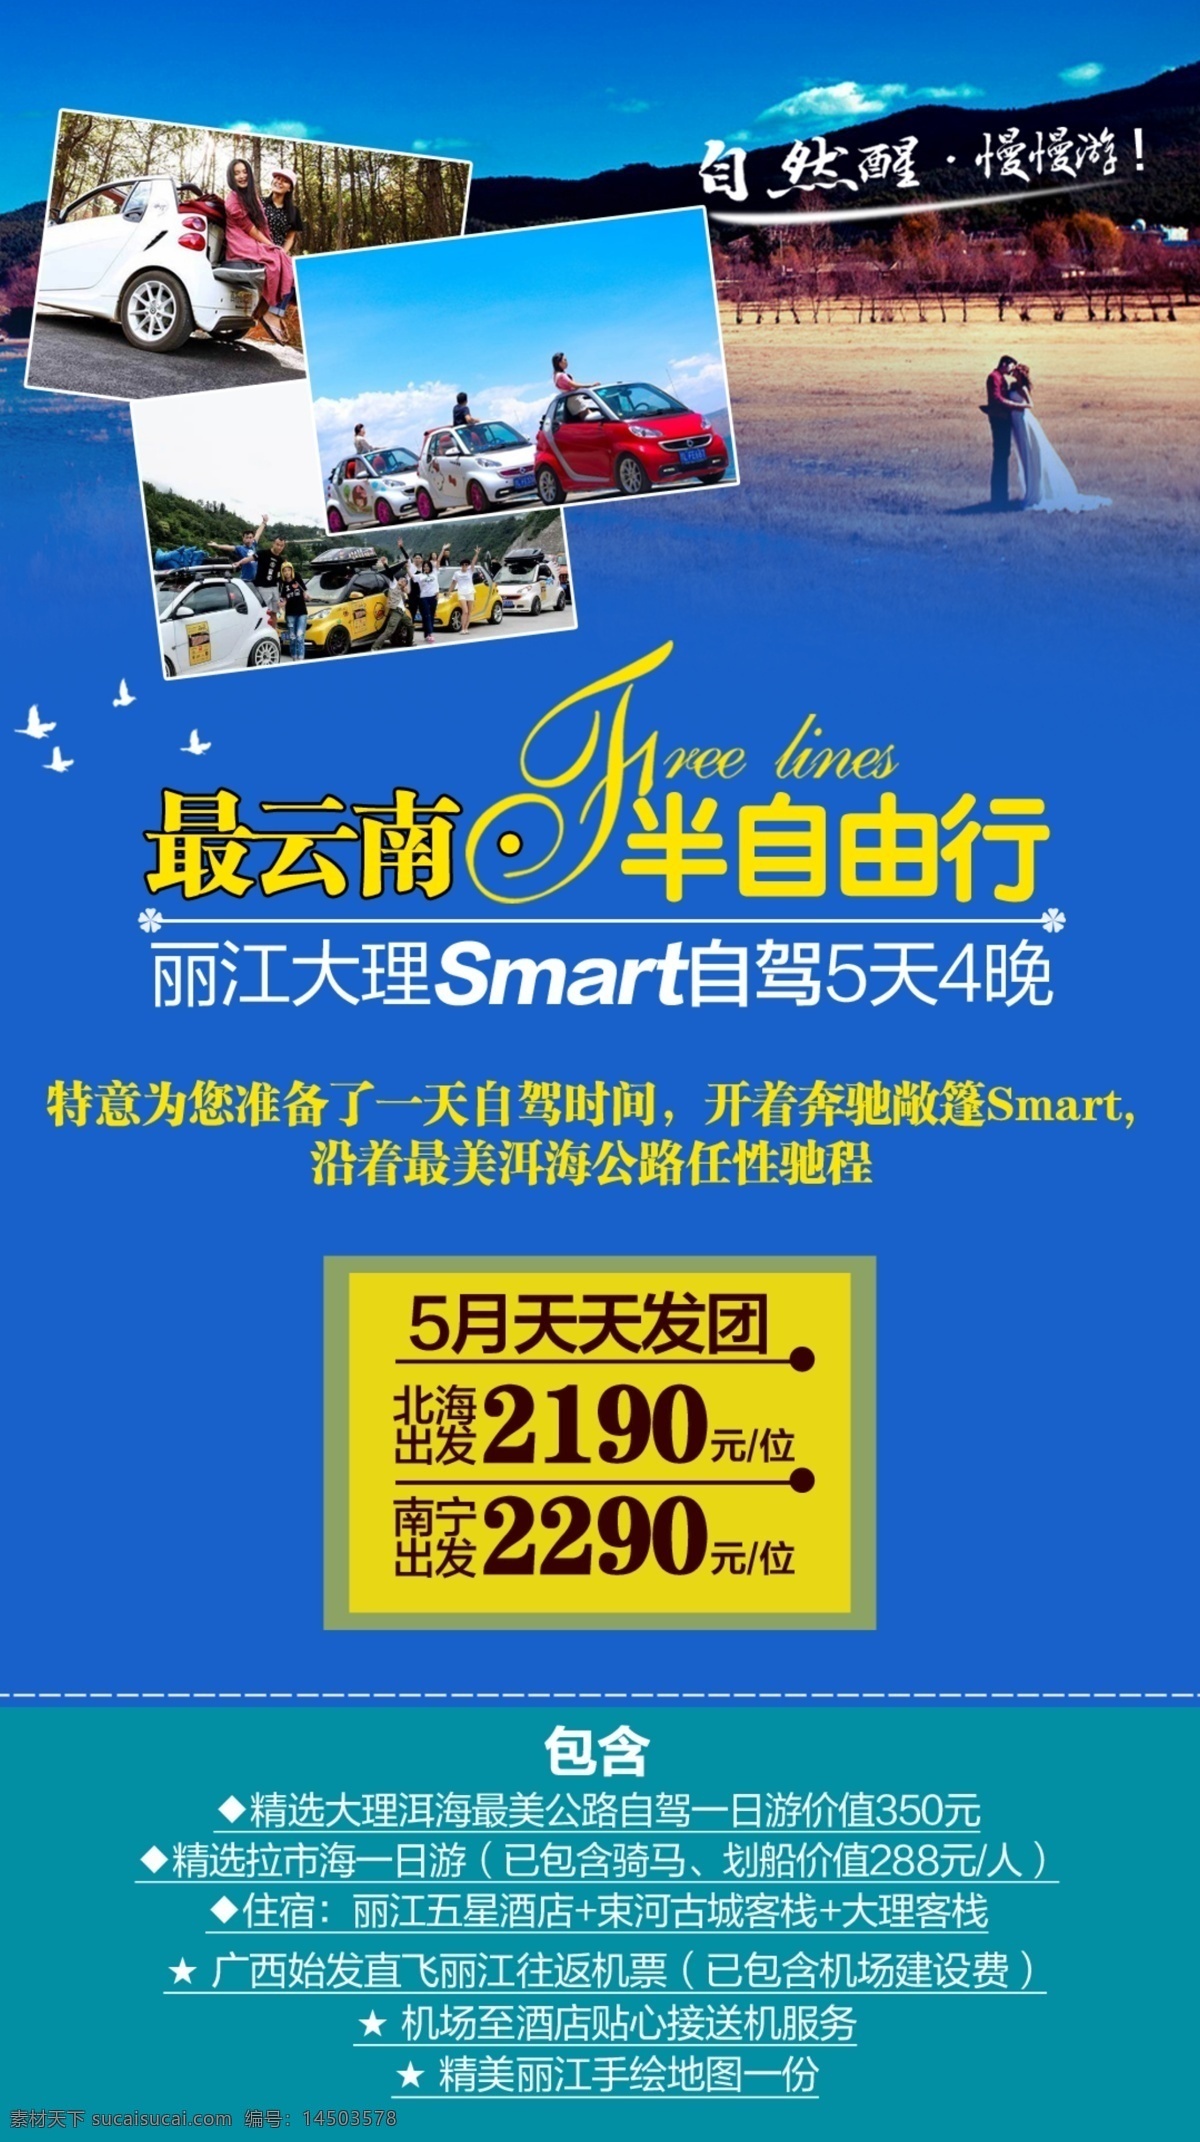 云南 丽江 大理 自驾 自由行 广告 云南旅游 旅游 蓝色